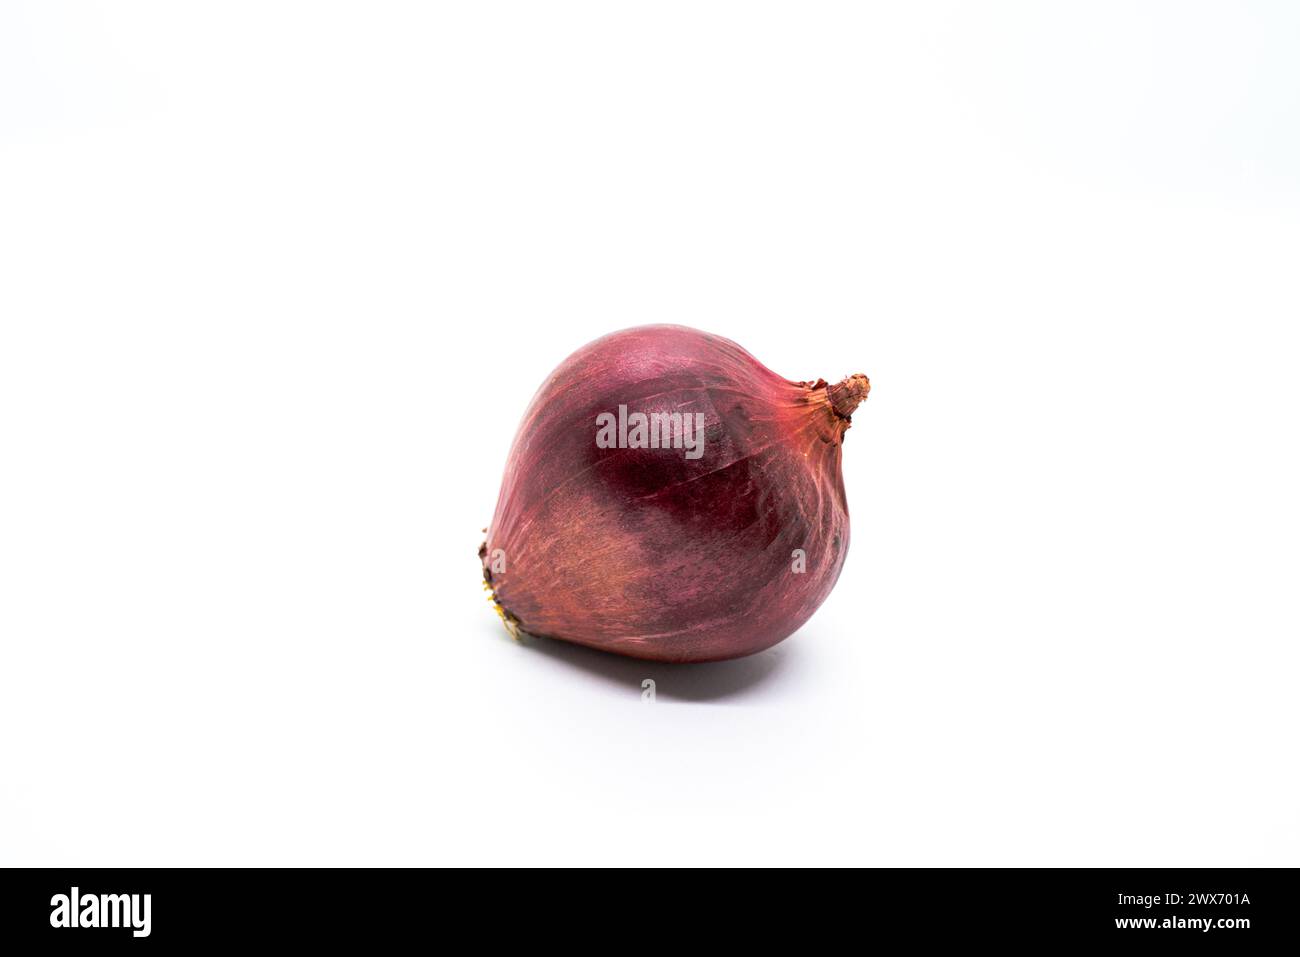 Uno sfondo bianco-porpleonion mostra una cipolla viola fresca e cruda, che simboleggia il potenziale culinario e aggiunge colori vivaci ai piatti. Foto Stock